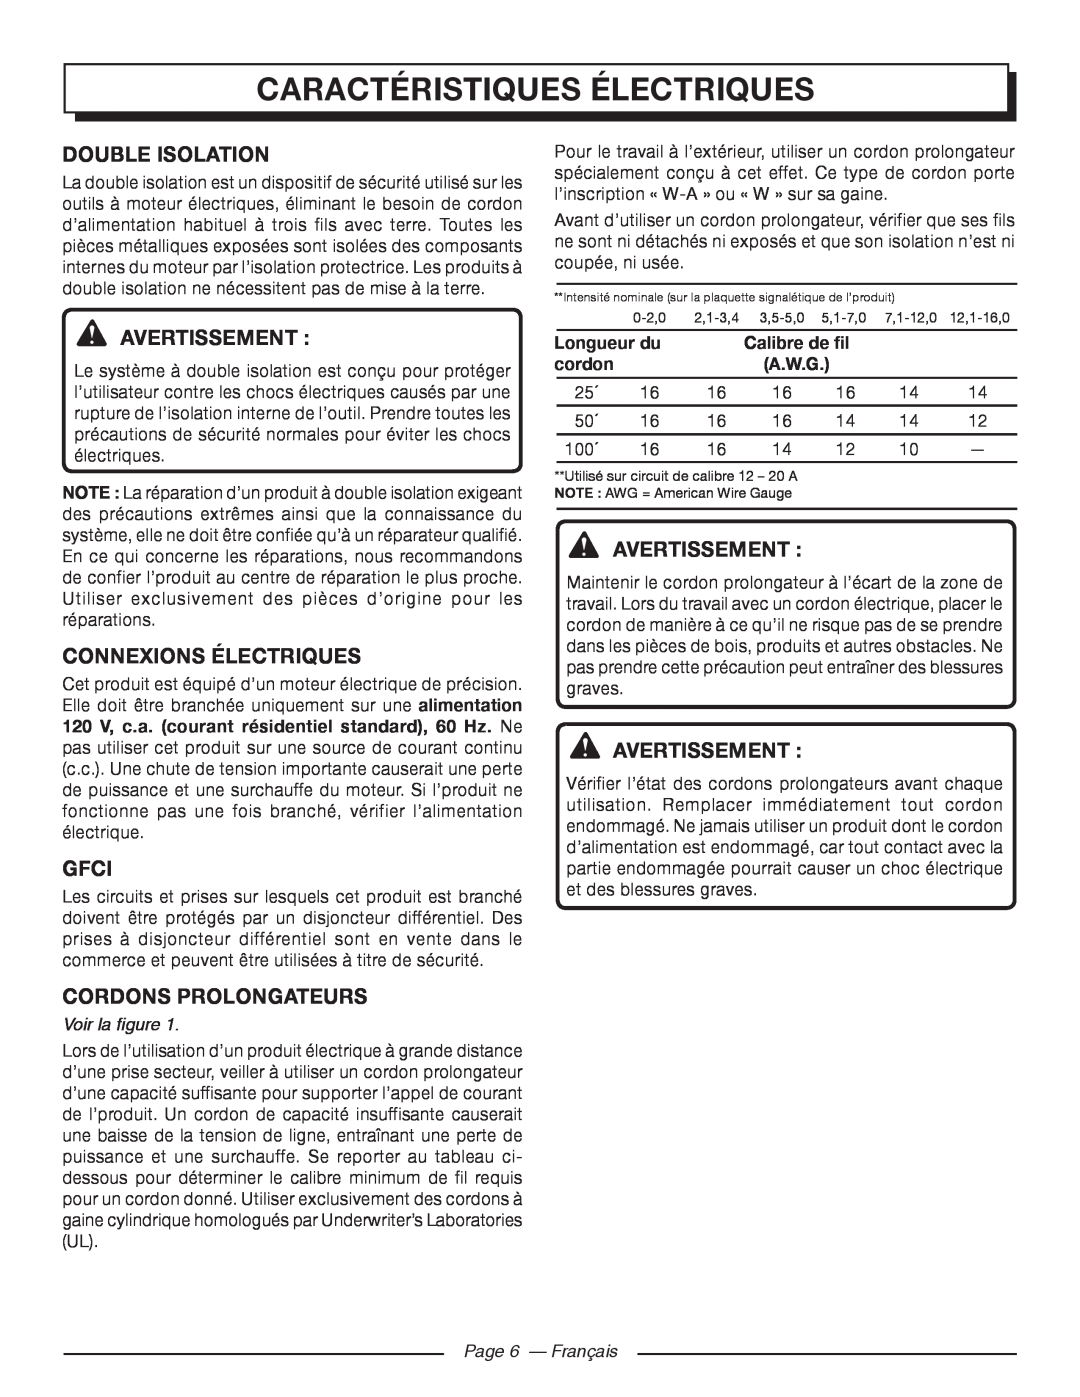 Homelite UT41112 Caractéristiques Électriques, Double Isolation, Connexions Électriques, Cordons Prolongateurs, cordon 